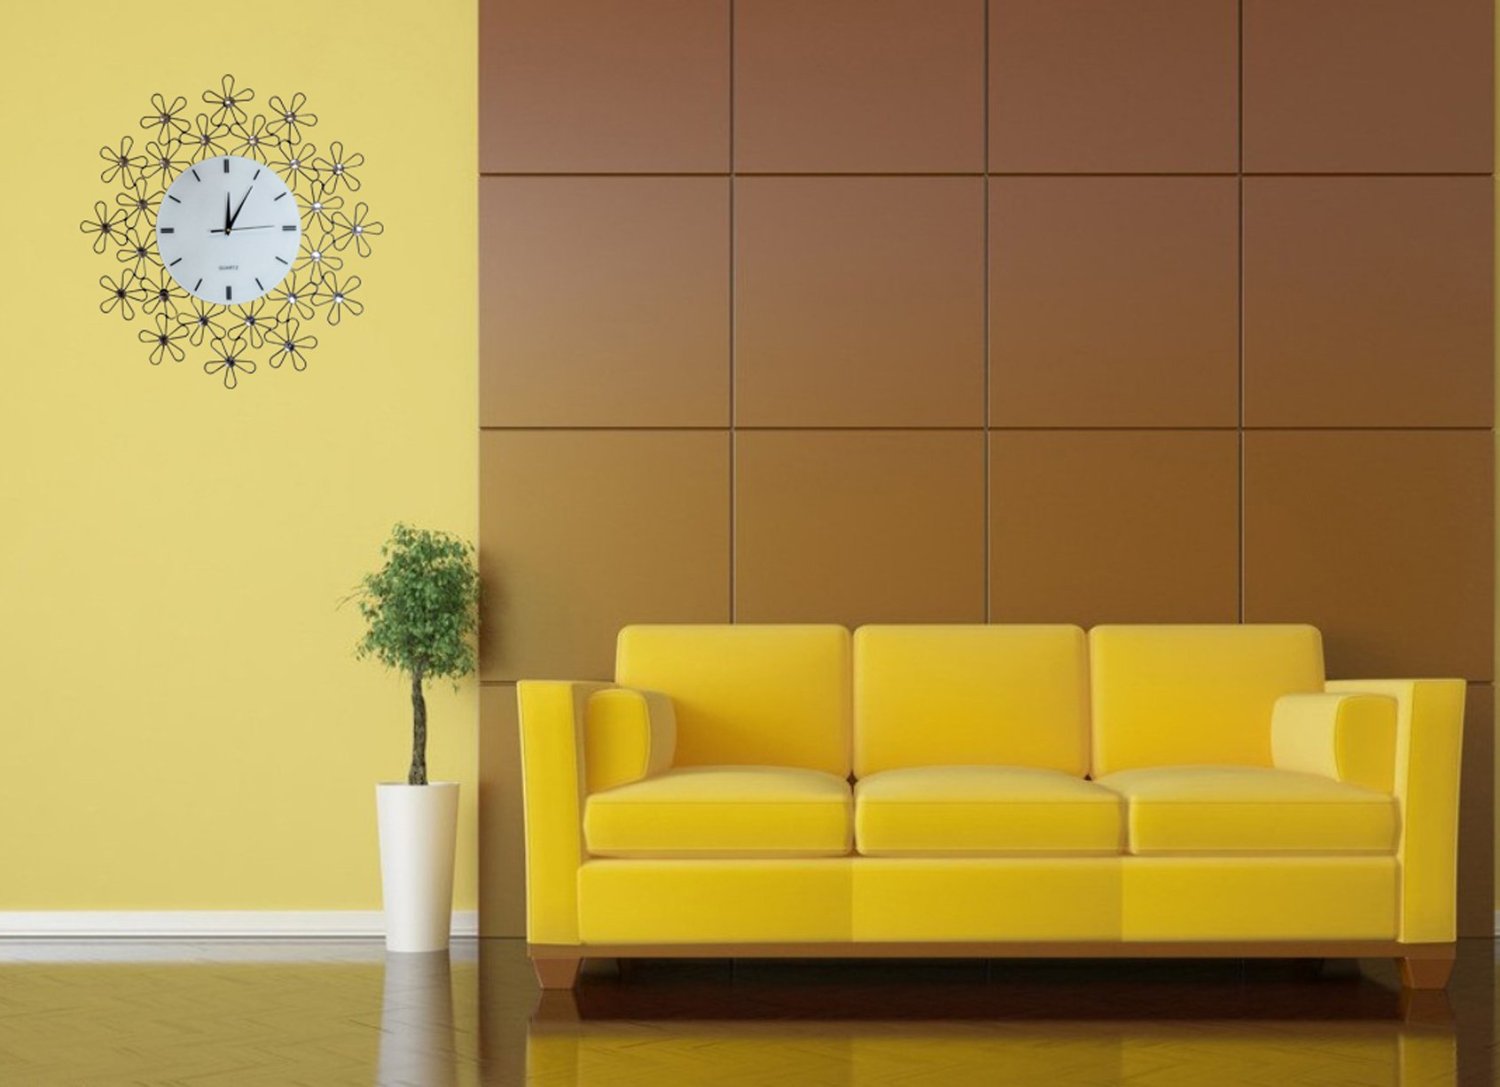 Желтый диван на фоне позолоченного декора смотрится очень богато